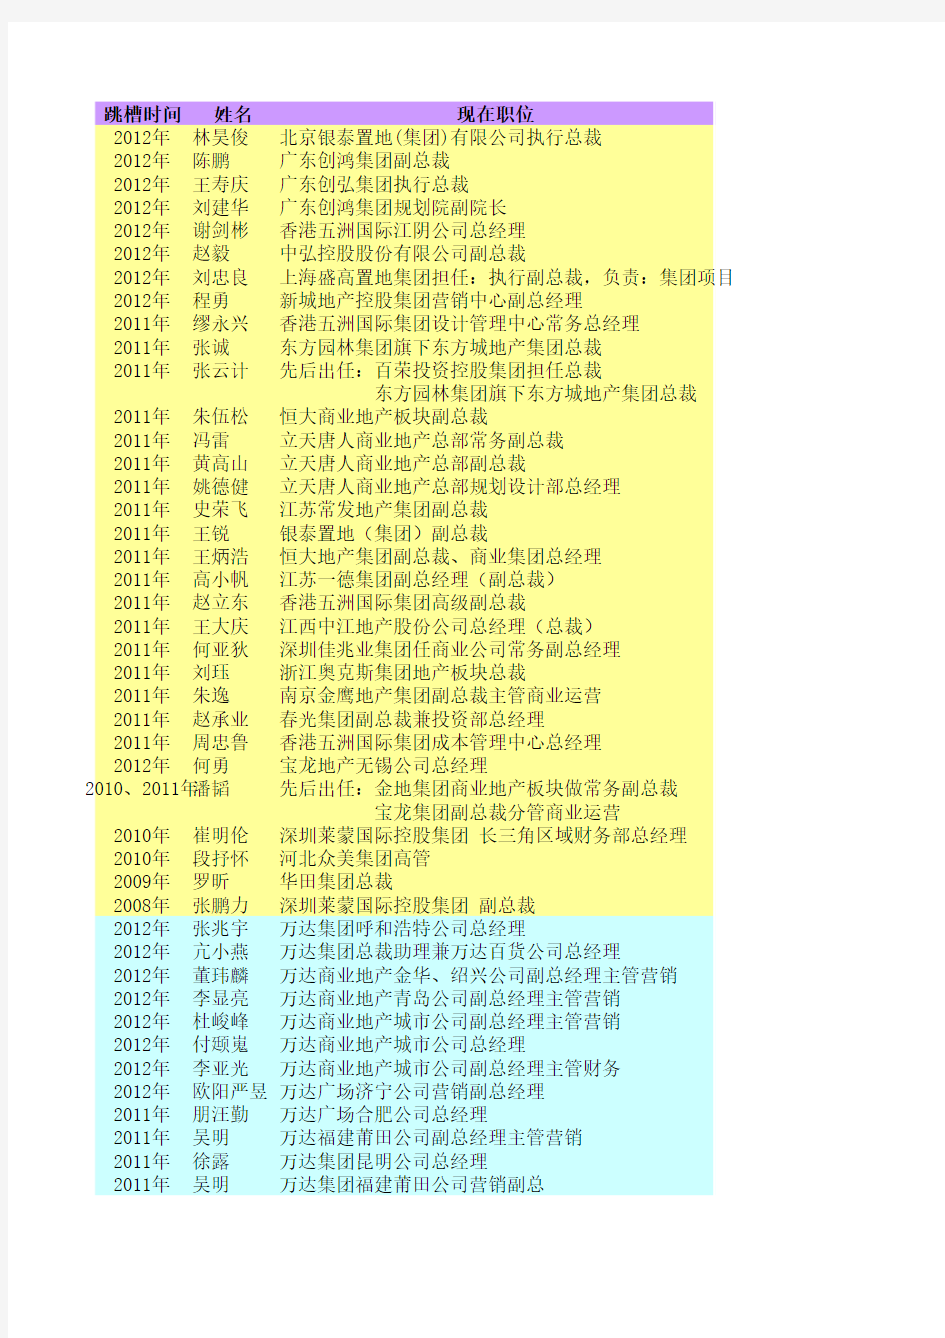 万达高管进出差异一览表 上海塔森猎头 更新至2013年1月